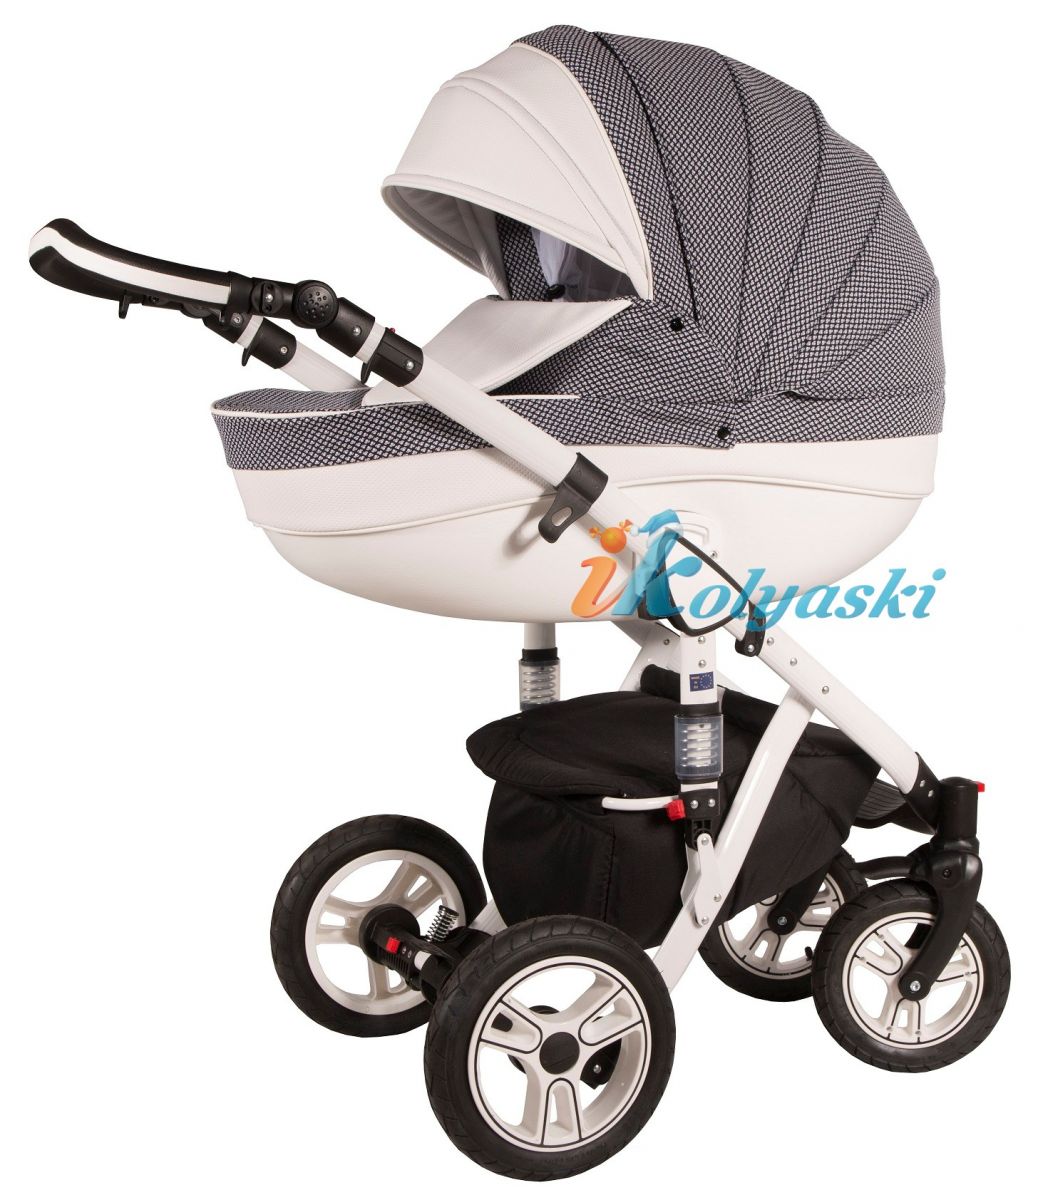 Kajtex Navy Plus Soft 2 в 1 экокожа и Basic Collection ткань, детская коляска для новорожденных, модульная на поворотных колесах, 2 в 1 Roan Bass Soft  - Роан Басс шасси Софт, обшивка люльки экокожа или ткань. Новинка 2018. Kajtex Navy Plus Soft 2 в 1, детская коляска для новорожденных, модульная коляска на поворотных колесах,  коляска 2 в 1, коляски для новорожденных, коляска с мягкой амортизацией, коляски для новорожденных 2018, коляска 2 в 1 купить, купить коляску дл